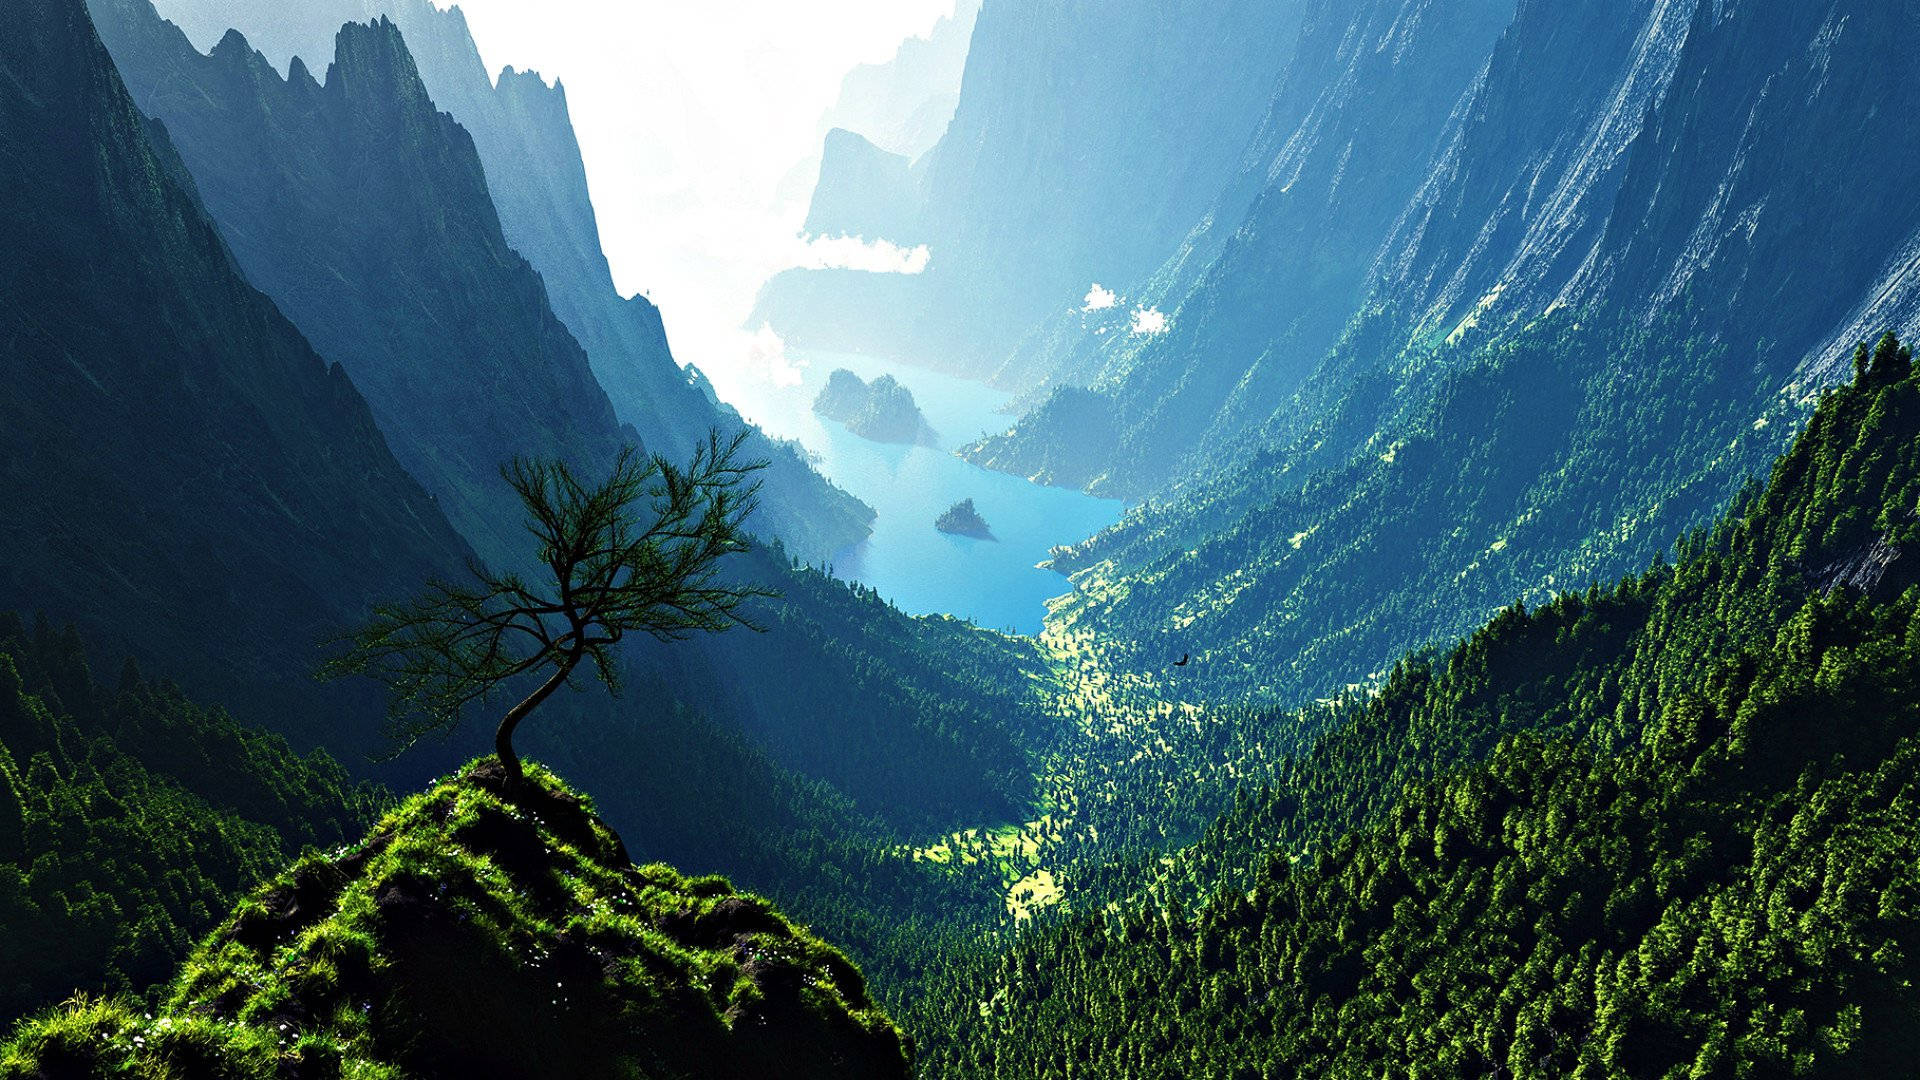 Slap af og nyd udsigten til den smukke bjergflod scenarie! Wallpaper